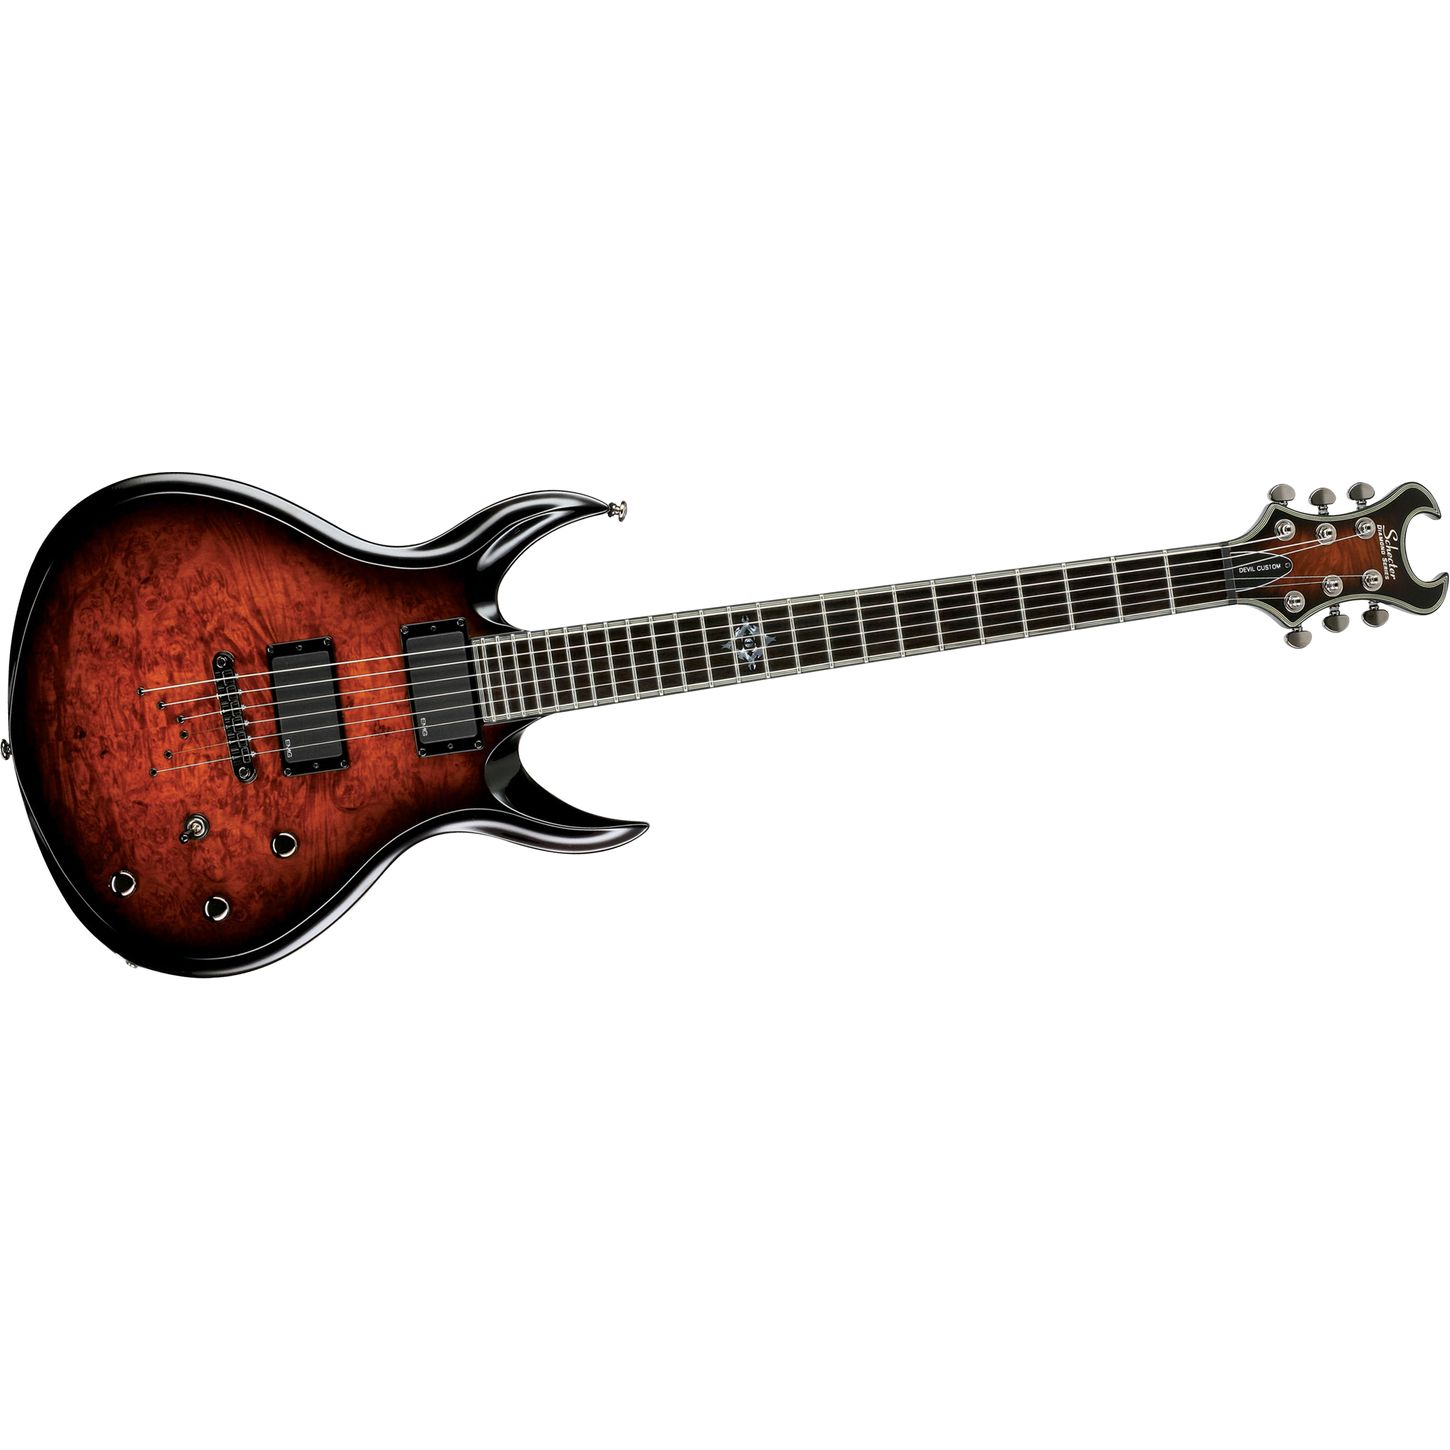 Devil Spine Guitar